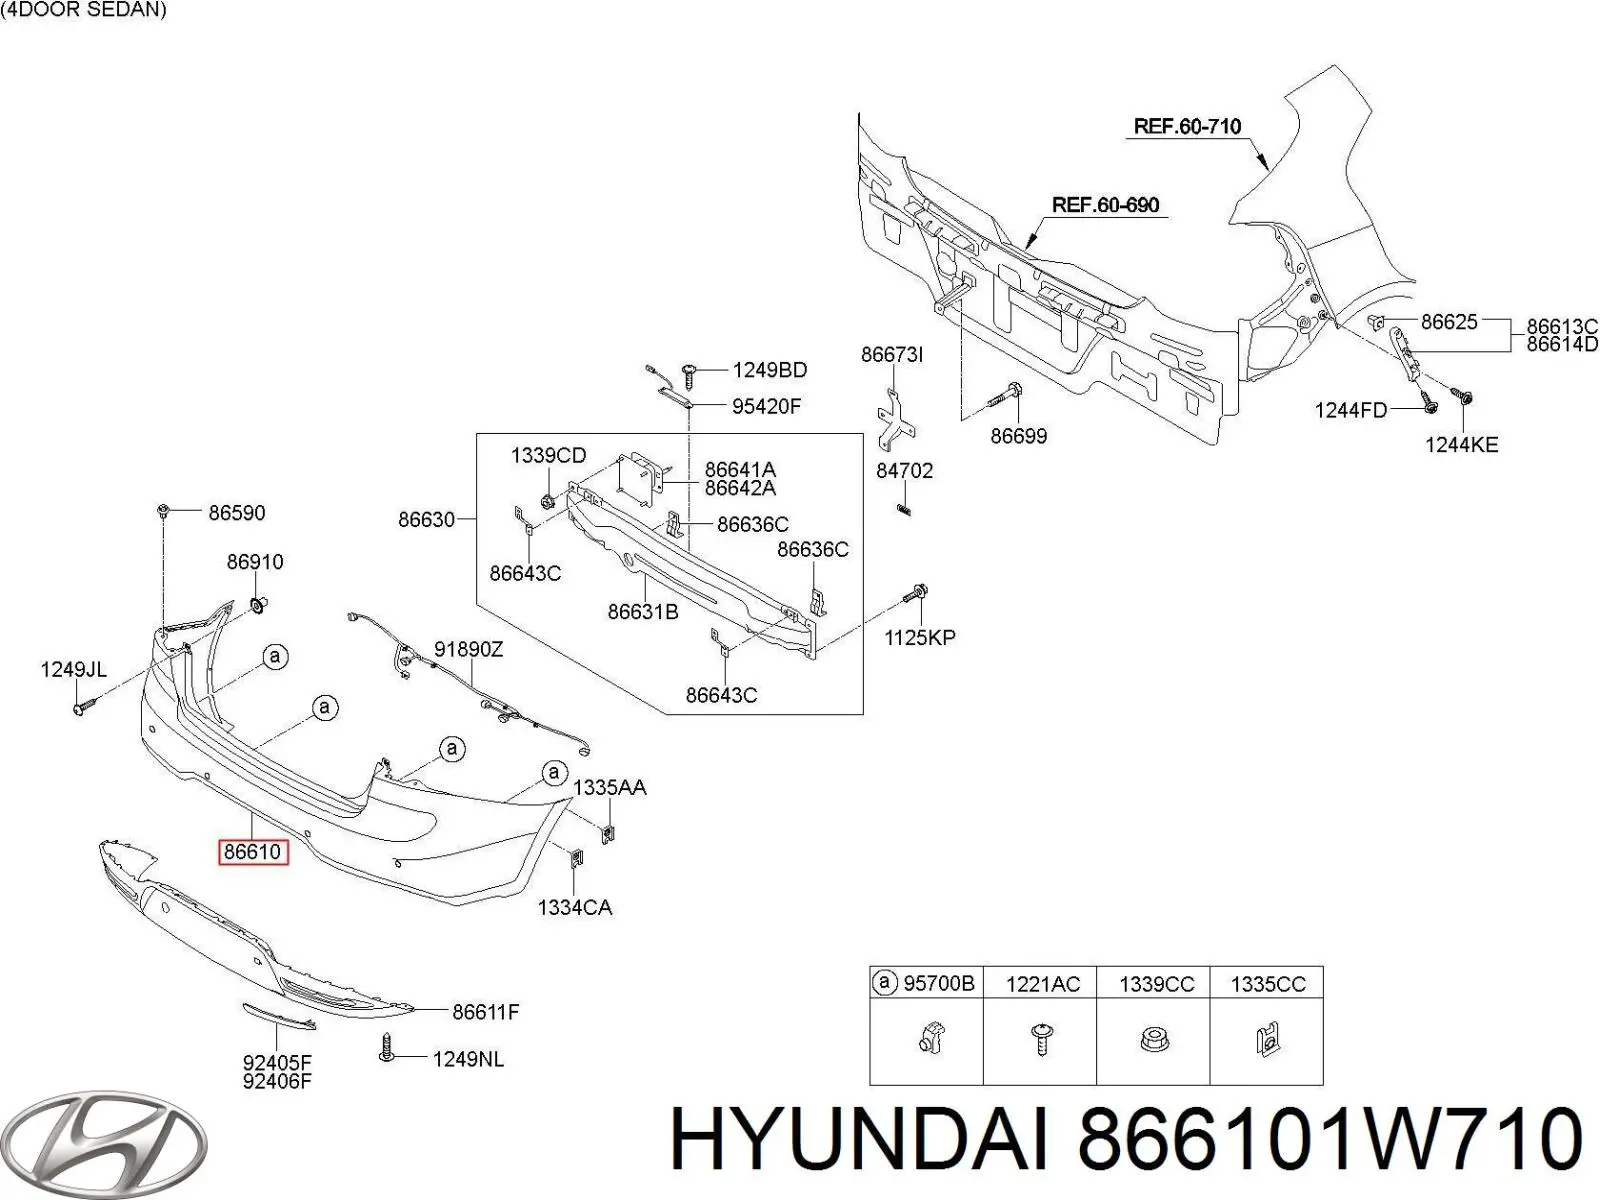 866101W710 Hyundai/Kia parachoques trasero